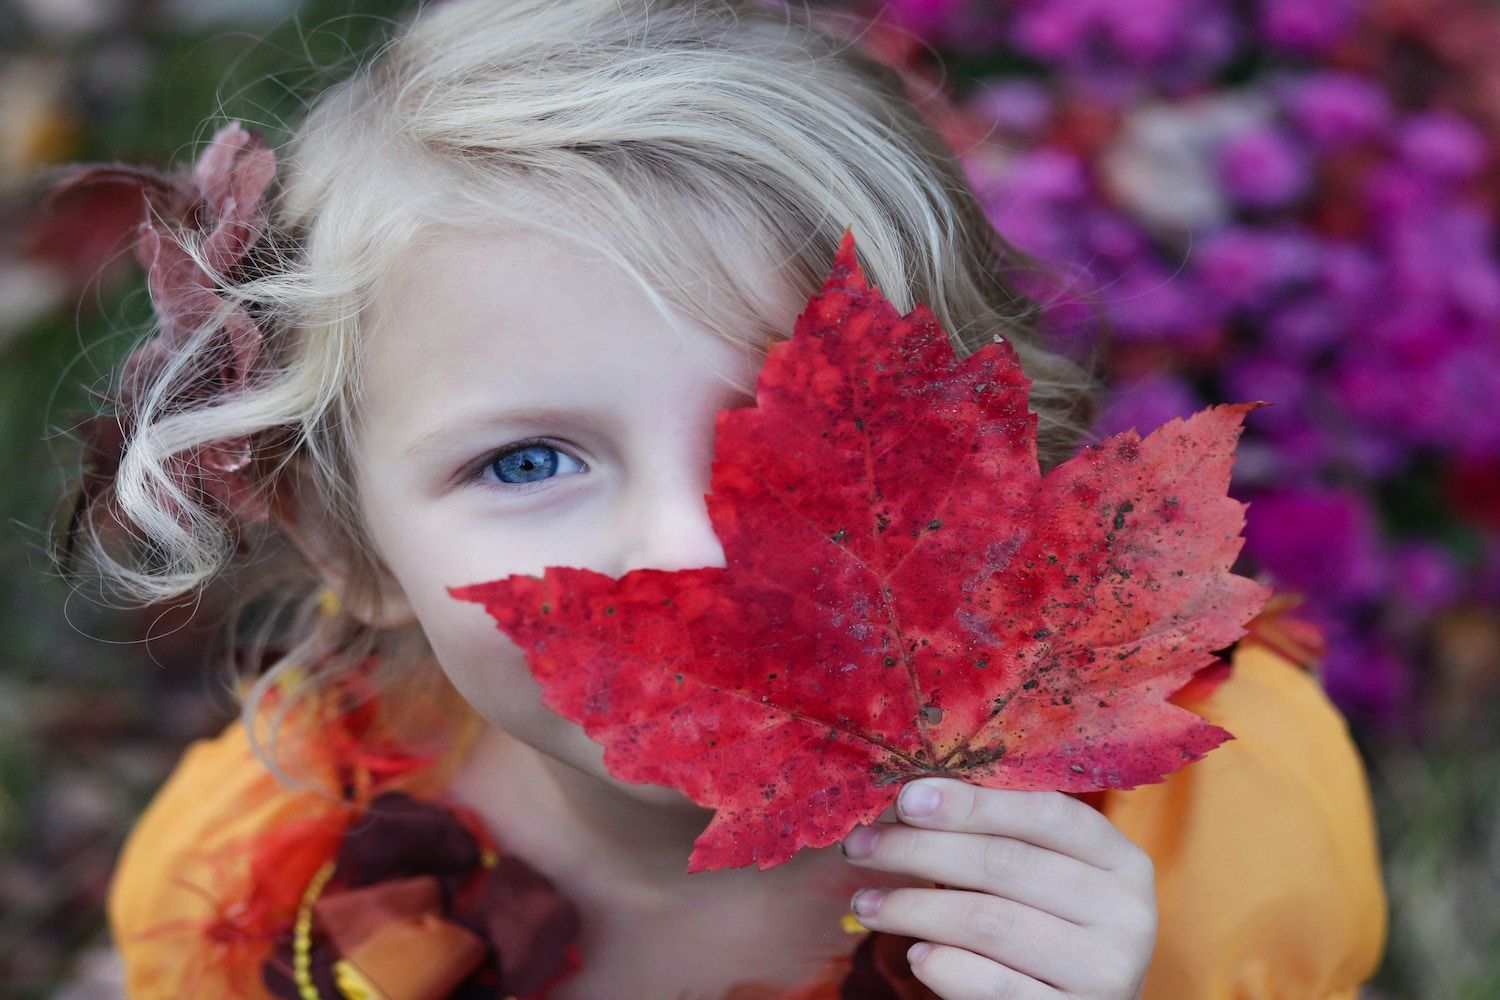 Naturkita Summerhill - Ein blondes Mädchen im orangenen Kleid und mit Blättern im Haar, hält sich ein rotes Ahornblatt vor das halbe Gesicht. Mit einem ihrer blauen Augen schaut sie in die Kamera.